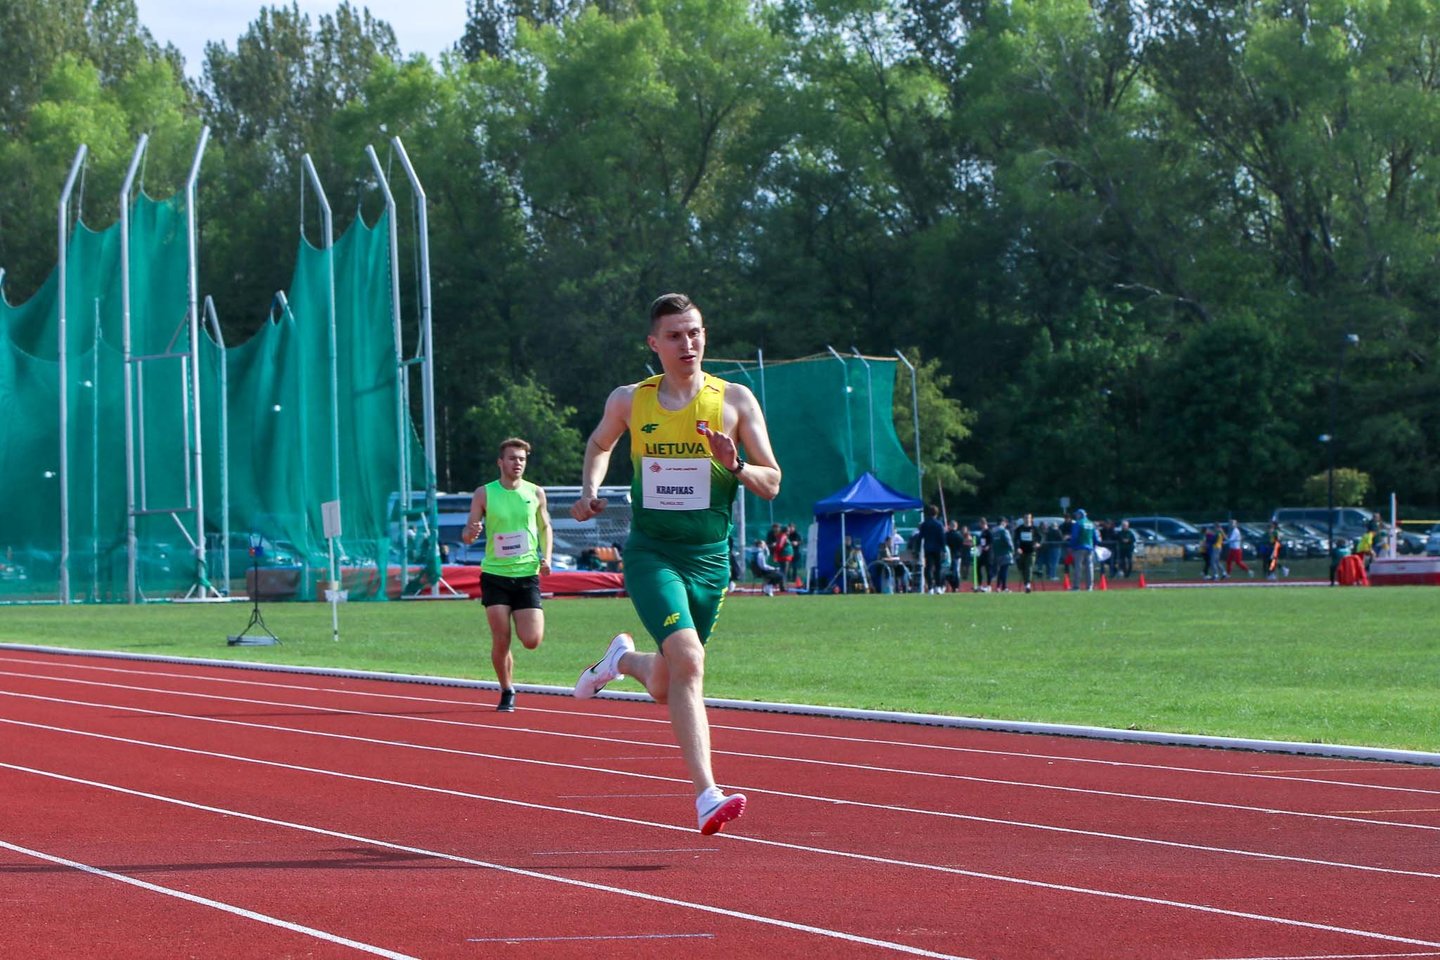  Lietuvos lengvosios atletikos čempionate Šiauliuose – net dvylika paraatletų<br> Donato Gribausko nuotr.